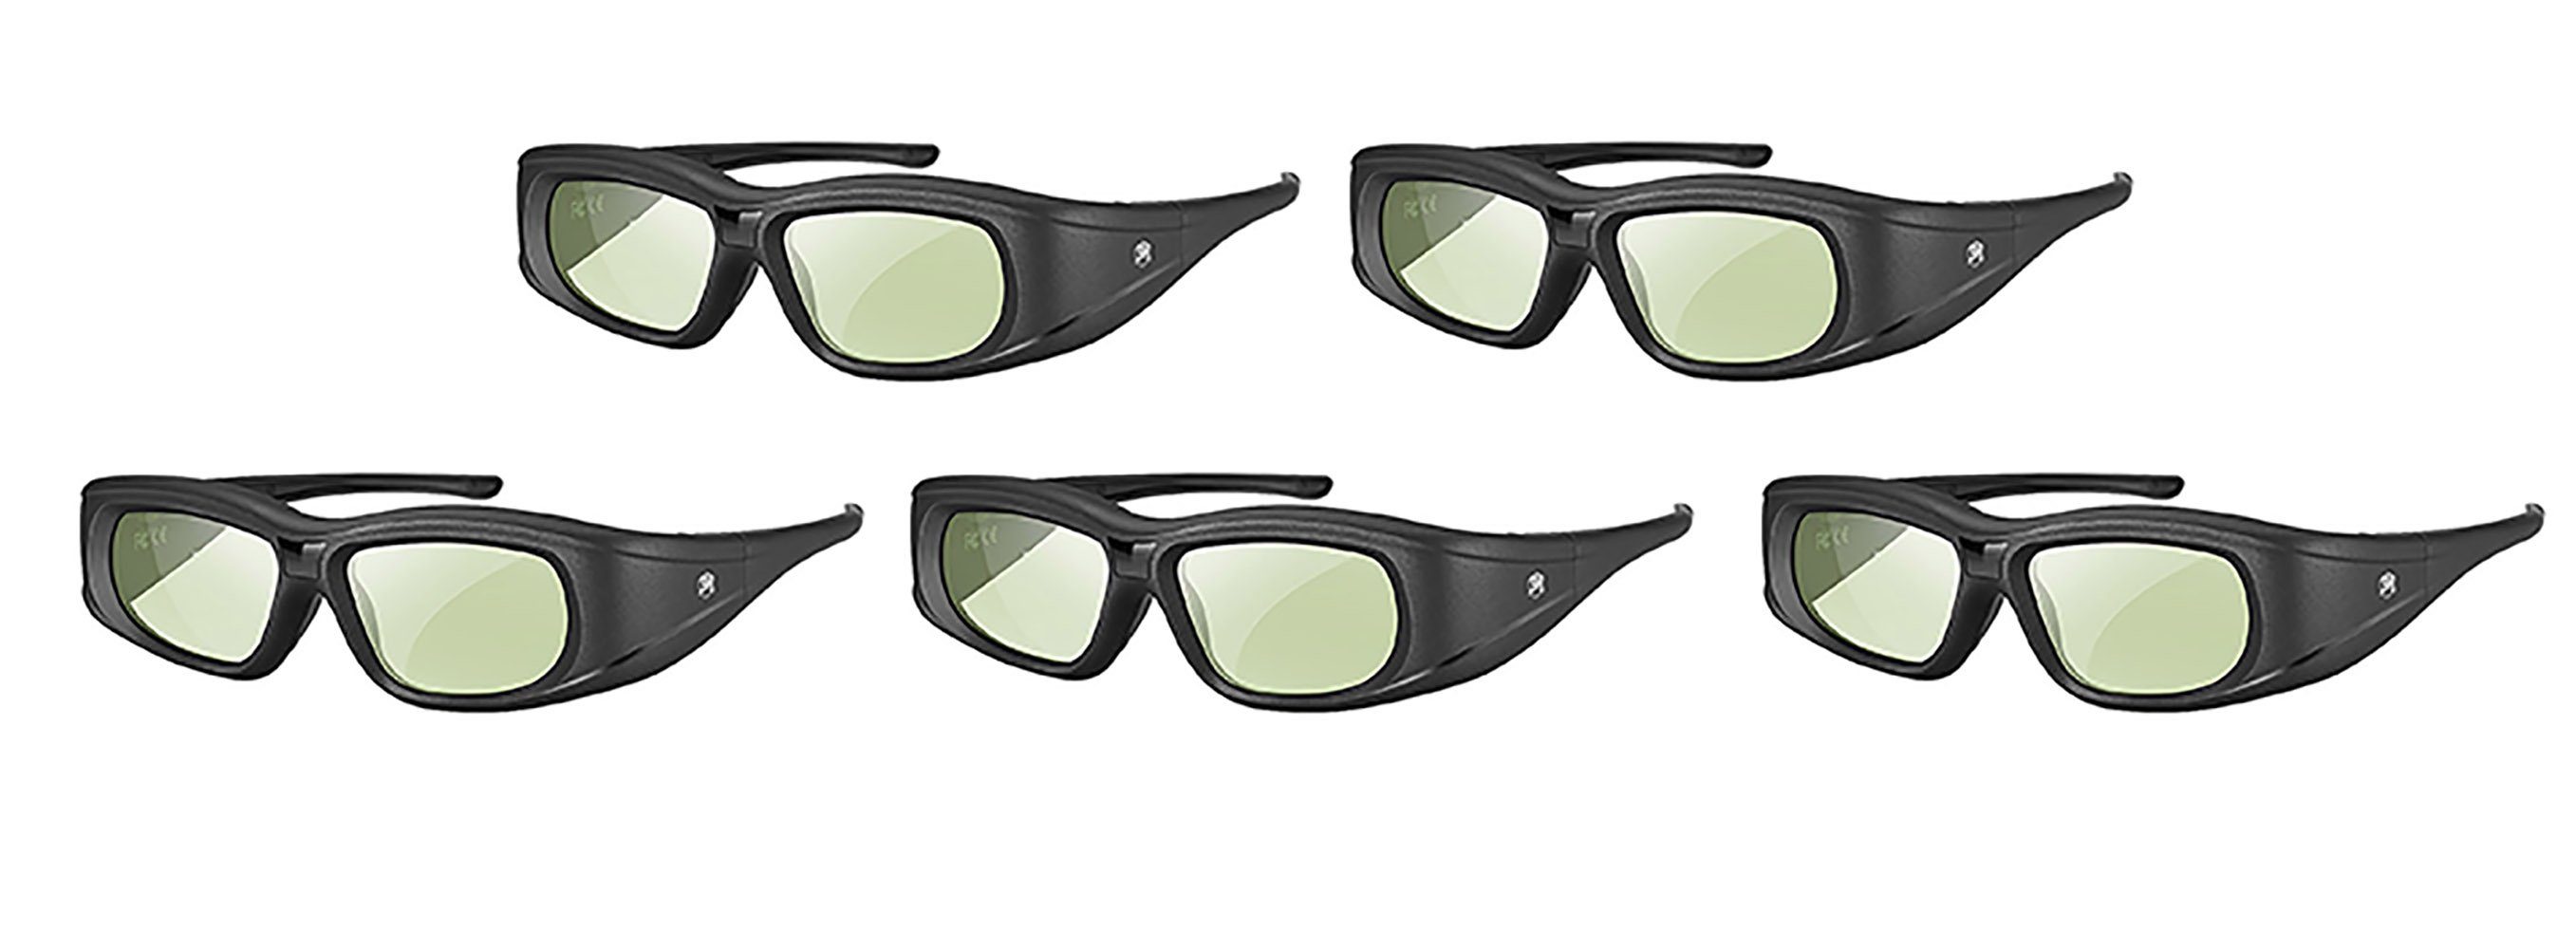 TPFNet 3D-Brille, Aktive 3D Shutter Brille für Bluetooth / RF 3D Fernseher  von Samsung, Panasonic, Epson, Sony etc. - wiederaufladbar - Schwarz - 5  Stück online kaufen | OTTO